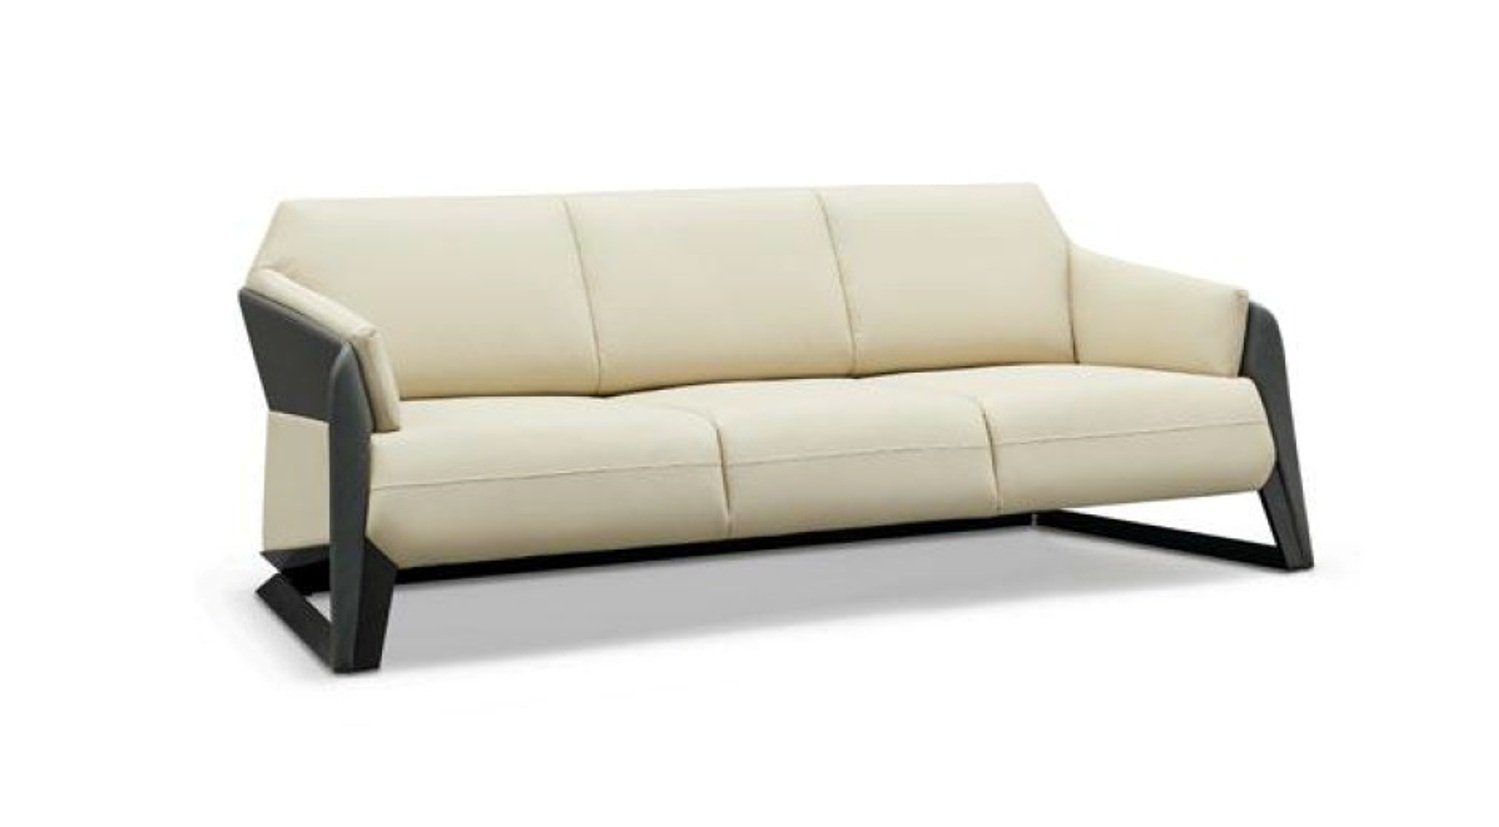 JVmoebel Sofa Weißer Dreisitzer Moderne Couch 3-Sitzer Polster Ledermöbel Neu, Made in Europe